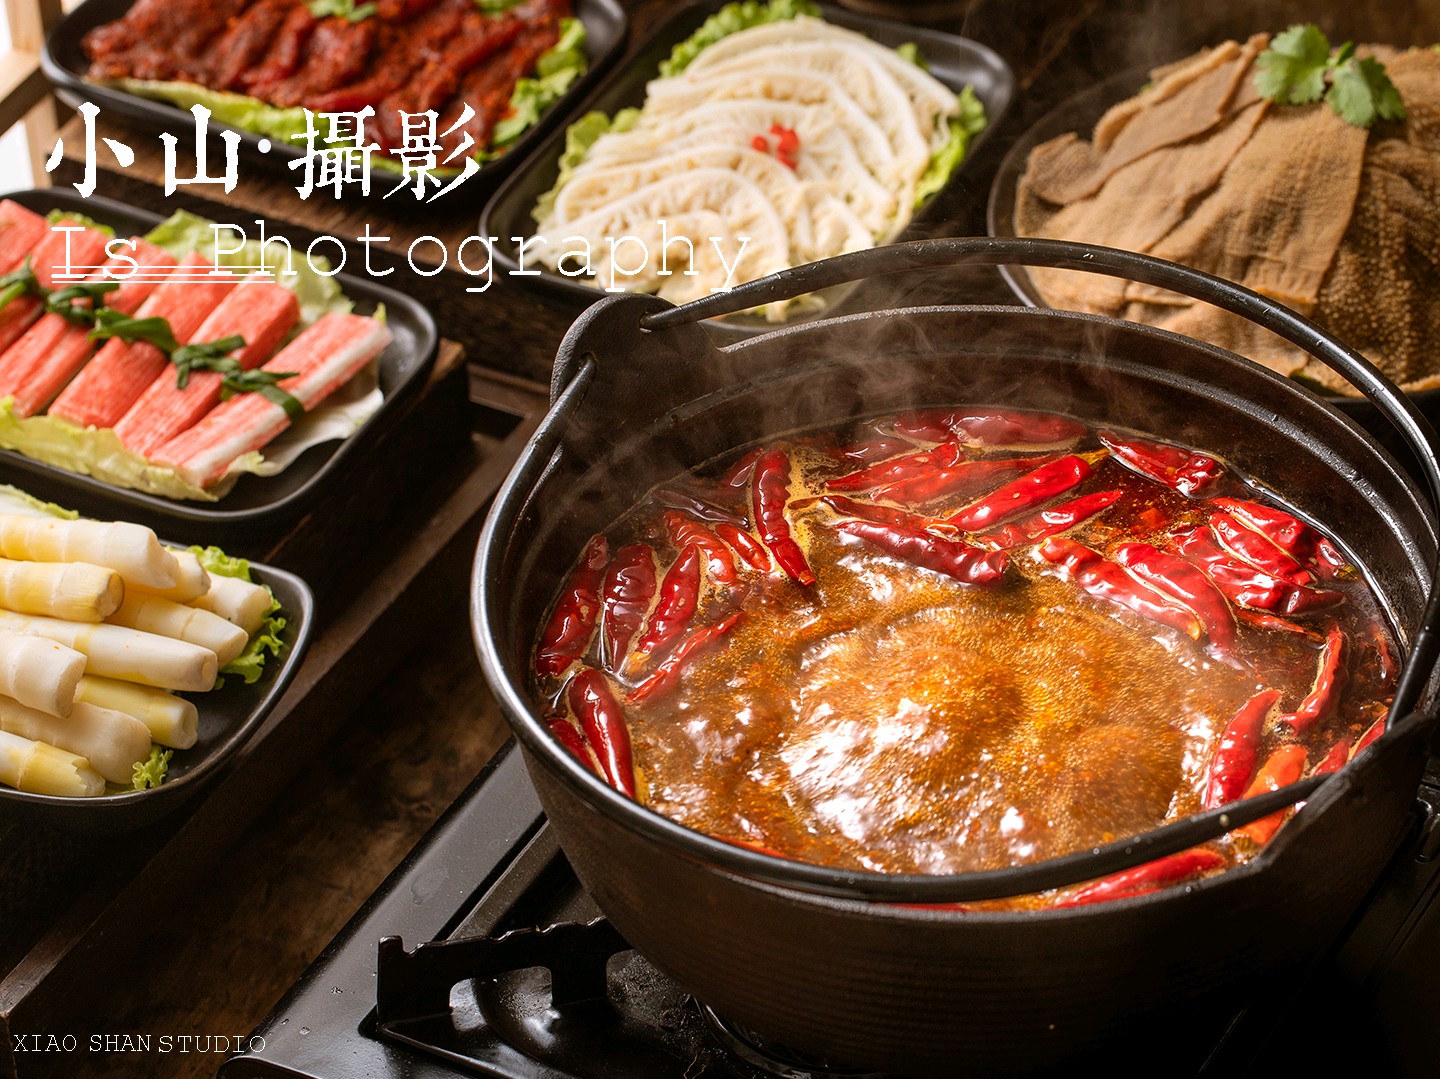 好人家 阳光番茄火锅底料 HRJ Tomato Hot Pot Condiment 200g - Bak Lai Fish Ball Food ...